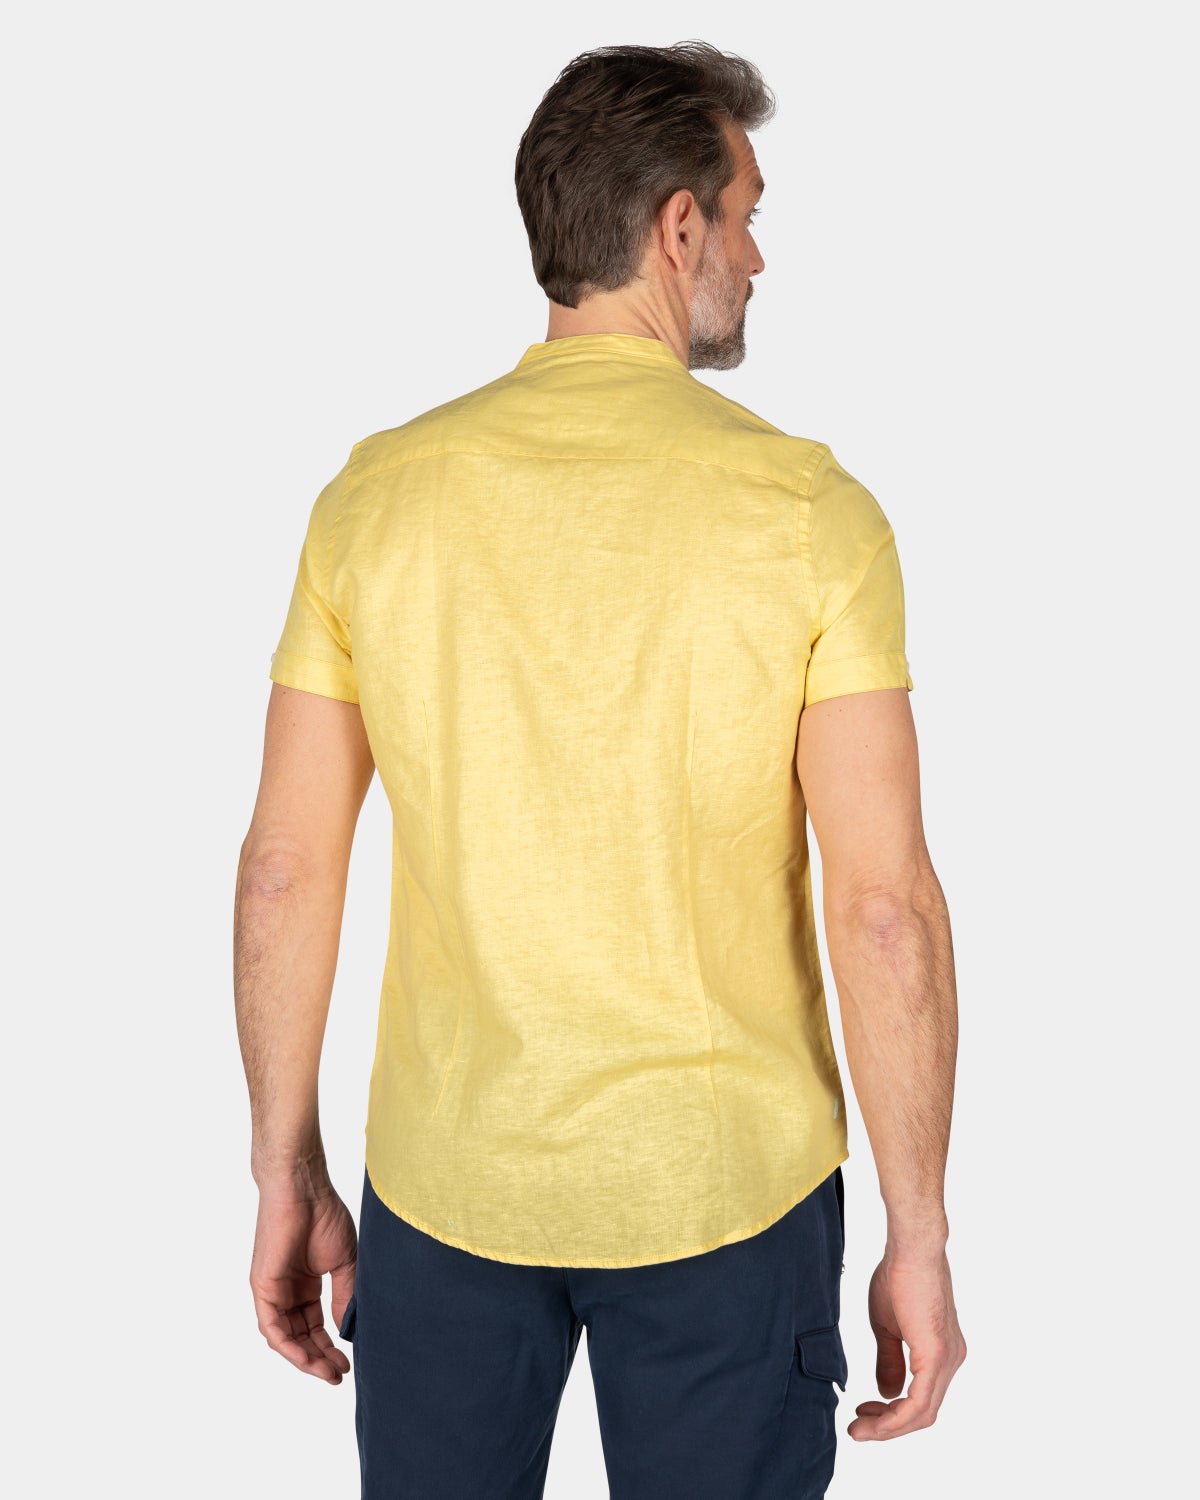 Collarless shirt with short sleeves - Iguana Yellow